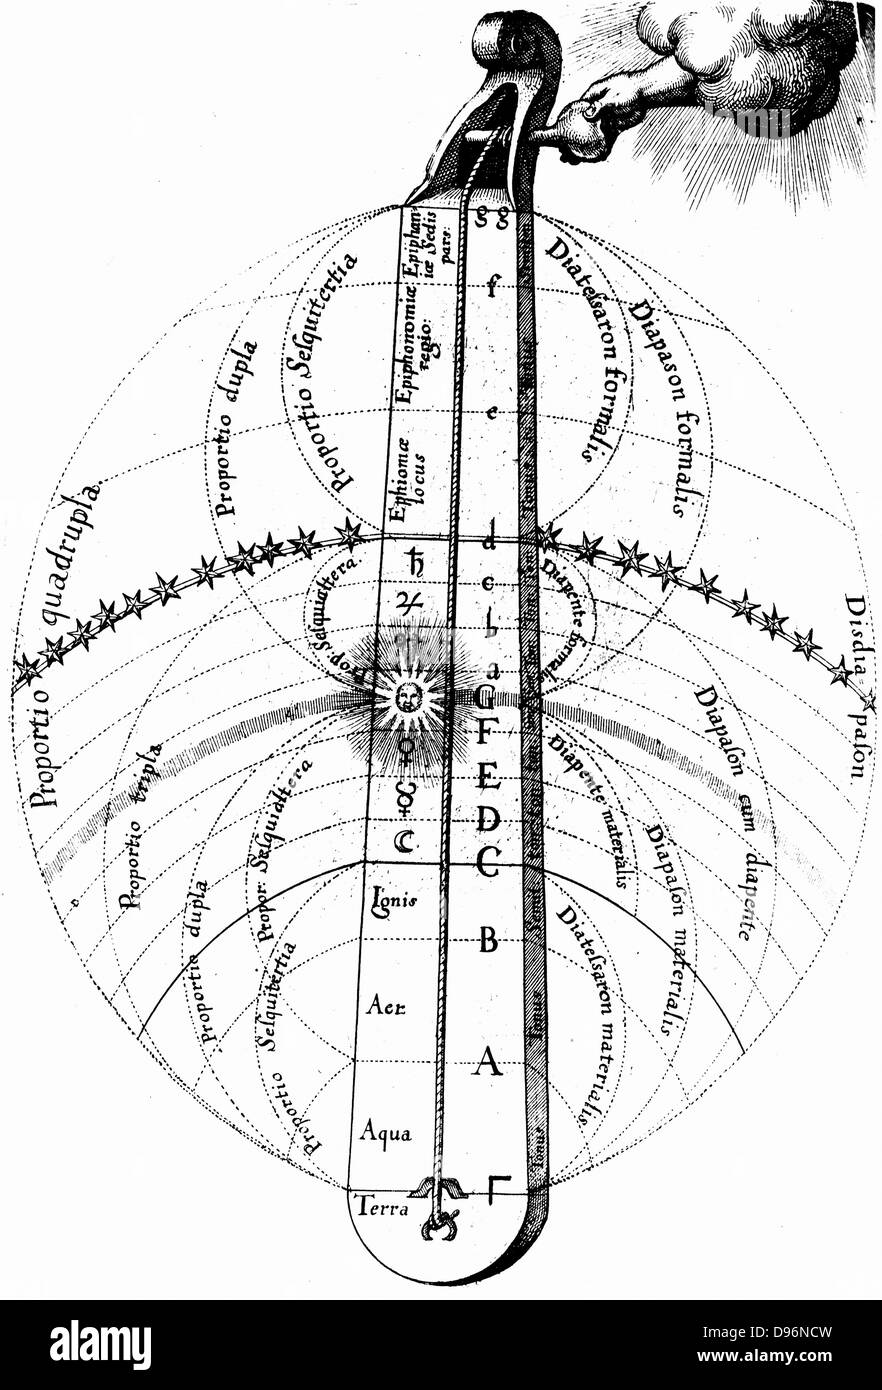 La divina armonia dell'universo, sintonizzato con la mano di Dio. Da Robert Fludd 'Ultriusque cosmi... historia, Oppenheim, 1617-1619. Incisione Foto Stock